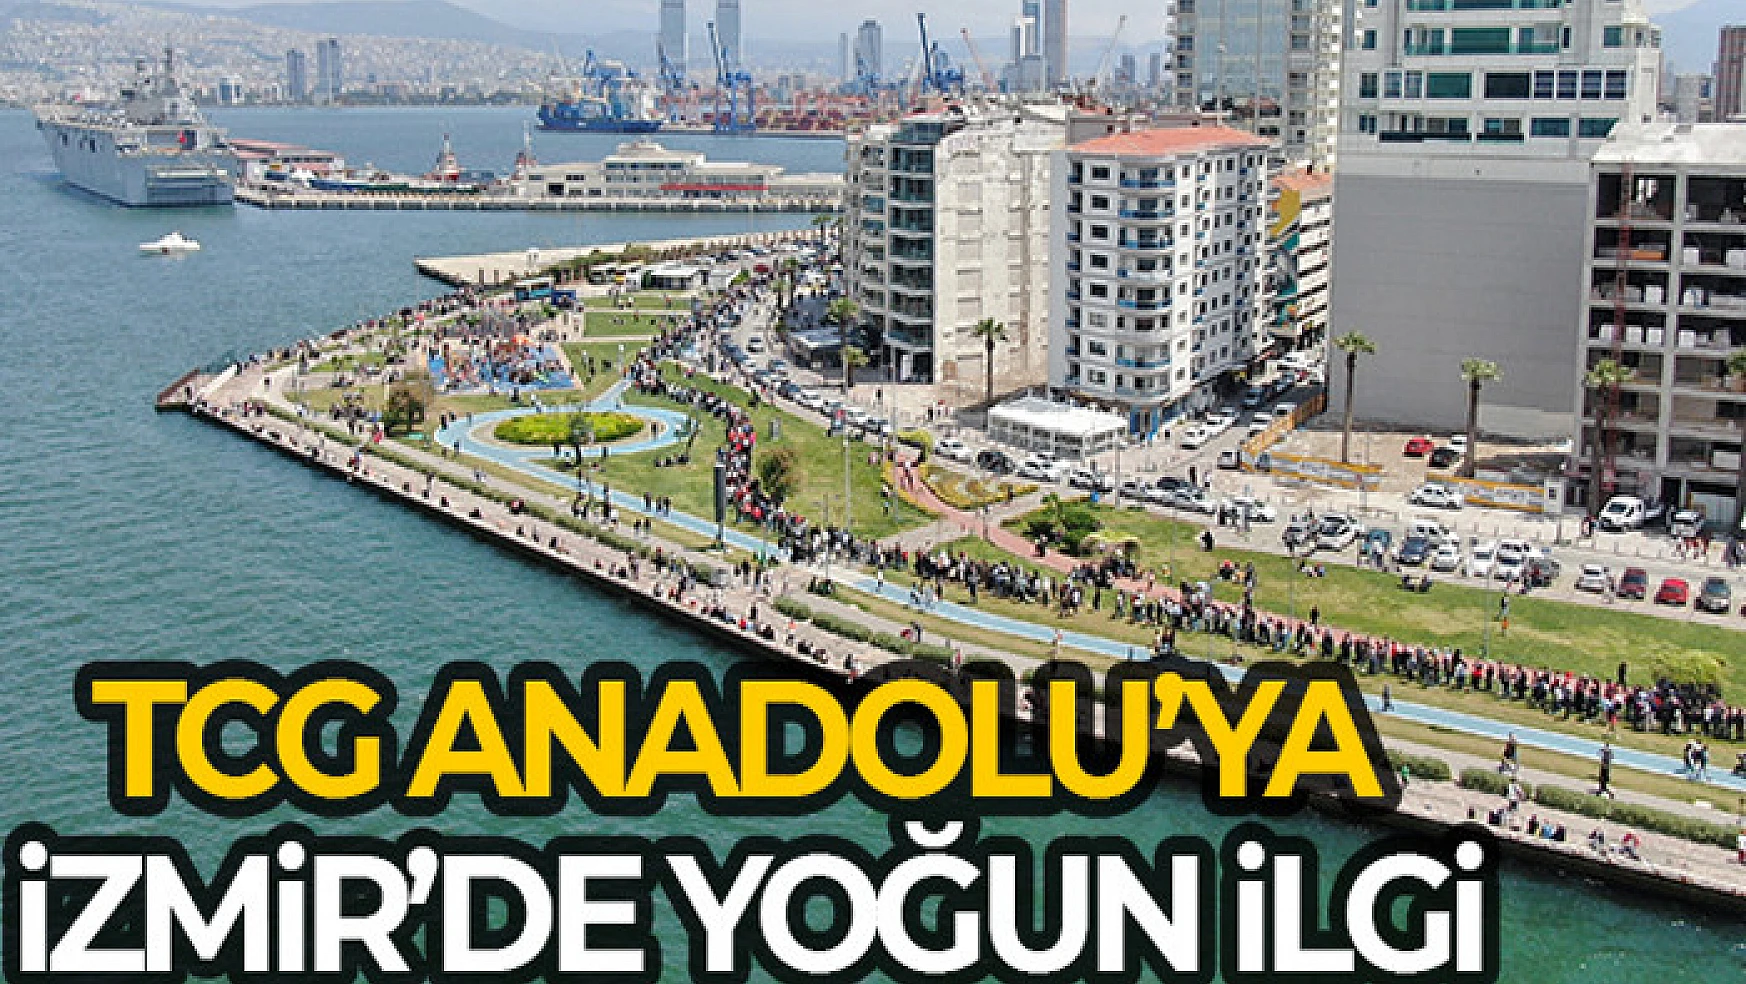 TCG Anadolu'ya ilgi İzmir trafiğini kilitledi: Bakan Kasapoğlu araçtan inip yürüdü